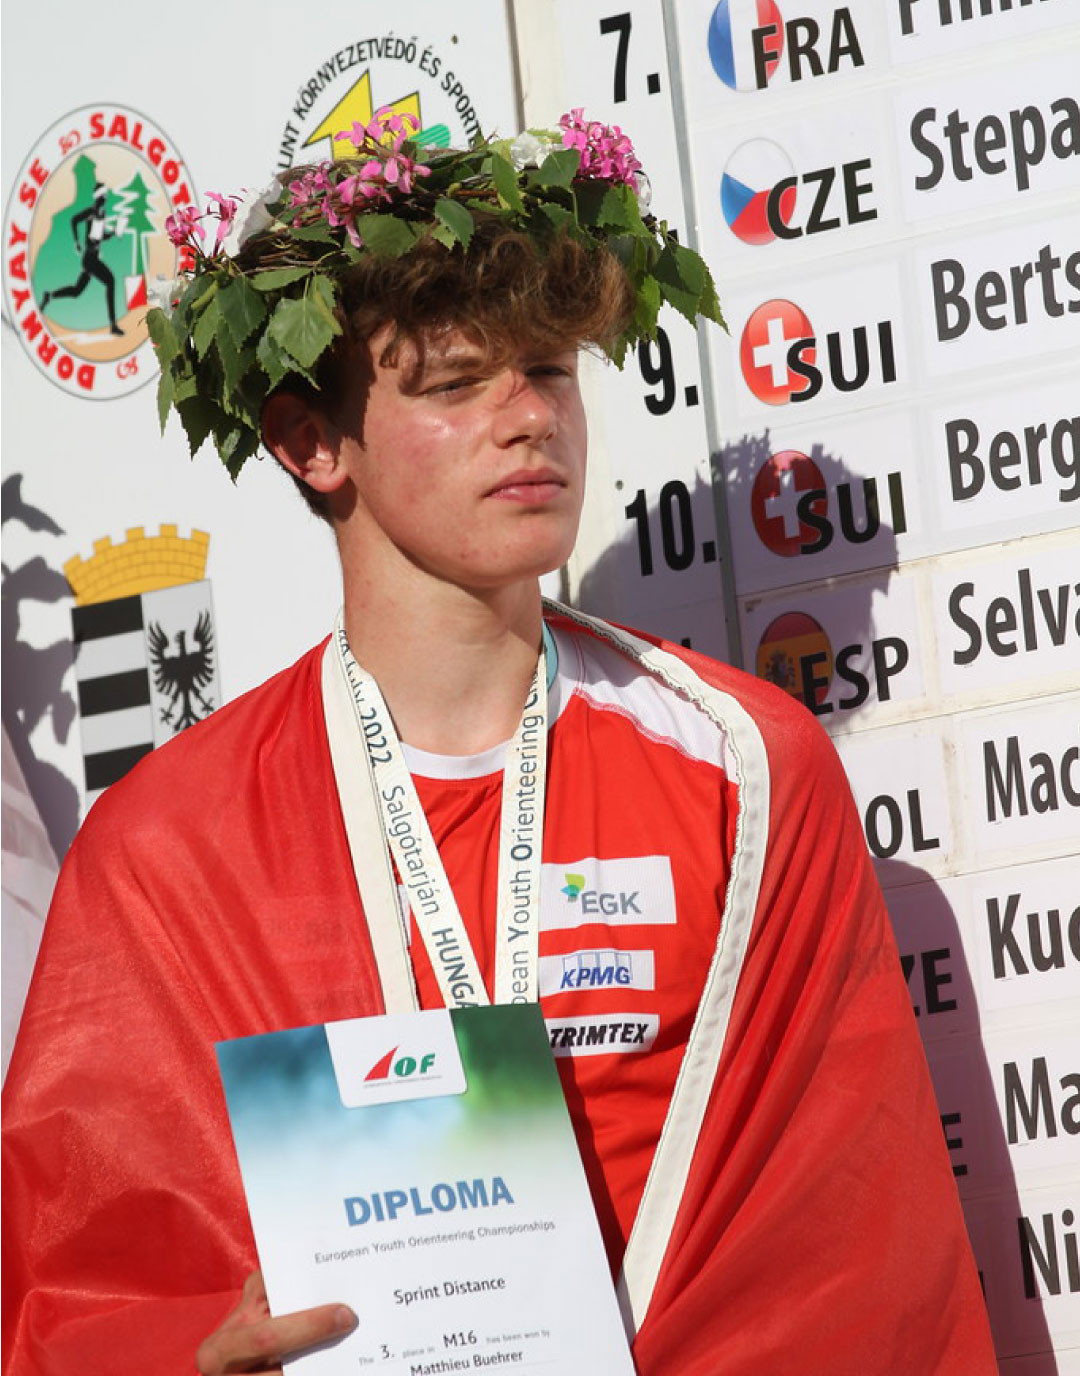 Matthieu Bührer mit Kranz auf dem Kopf und rotem Umhang hält Diplom in der Hand